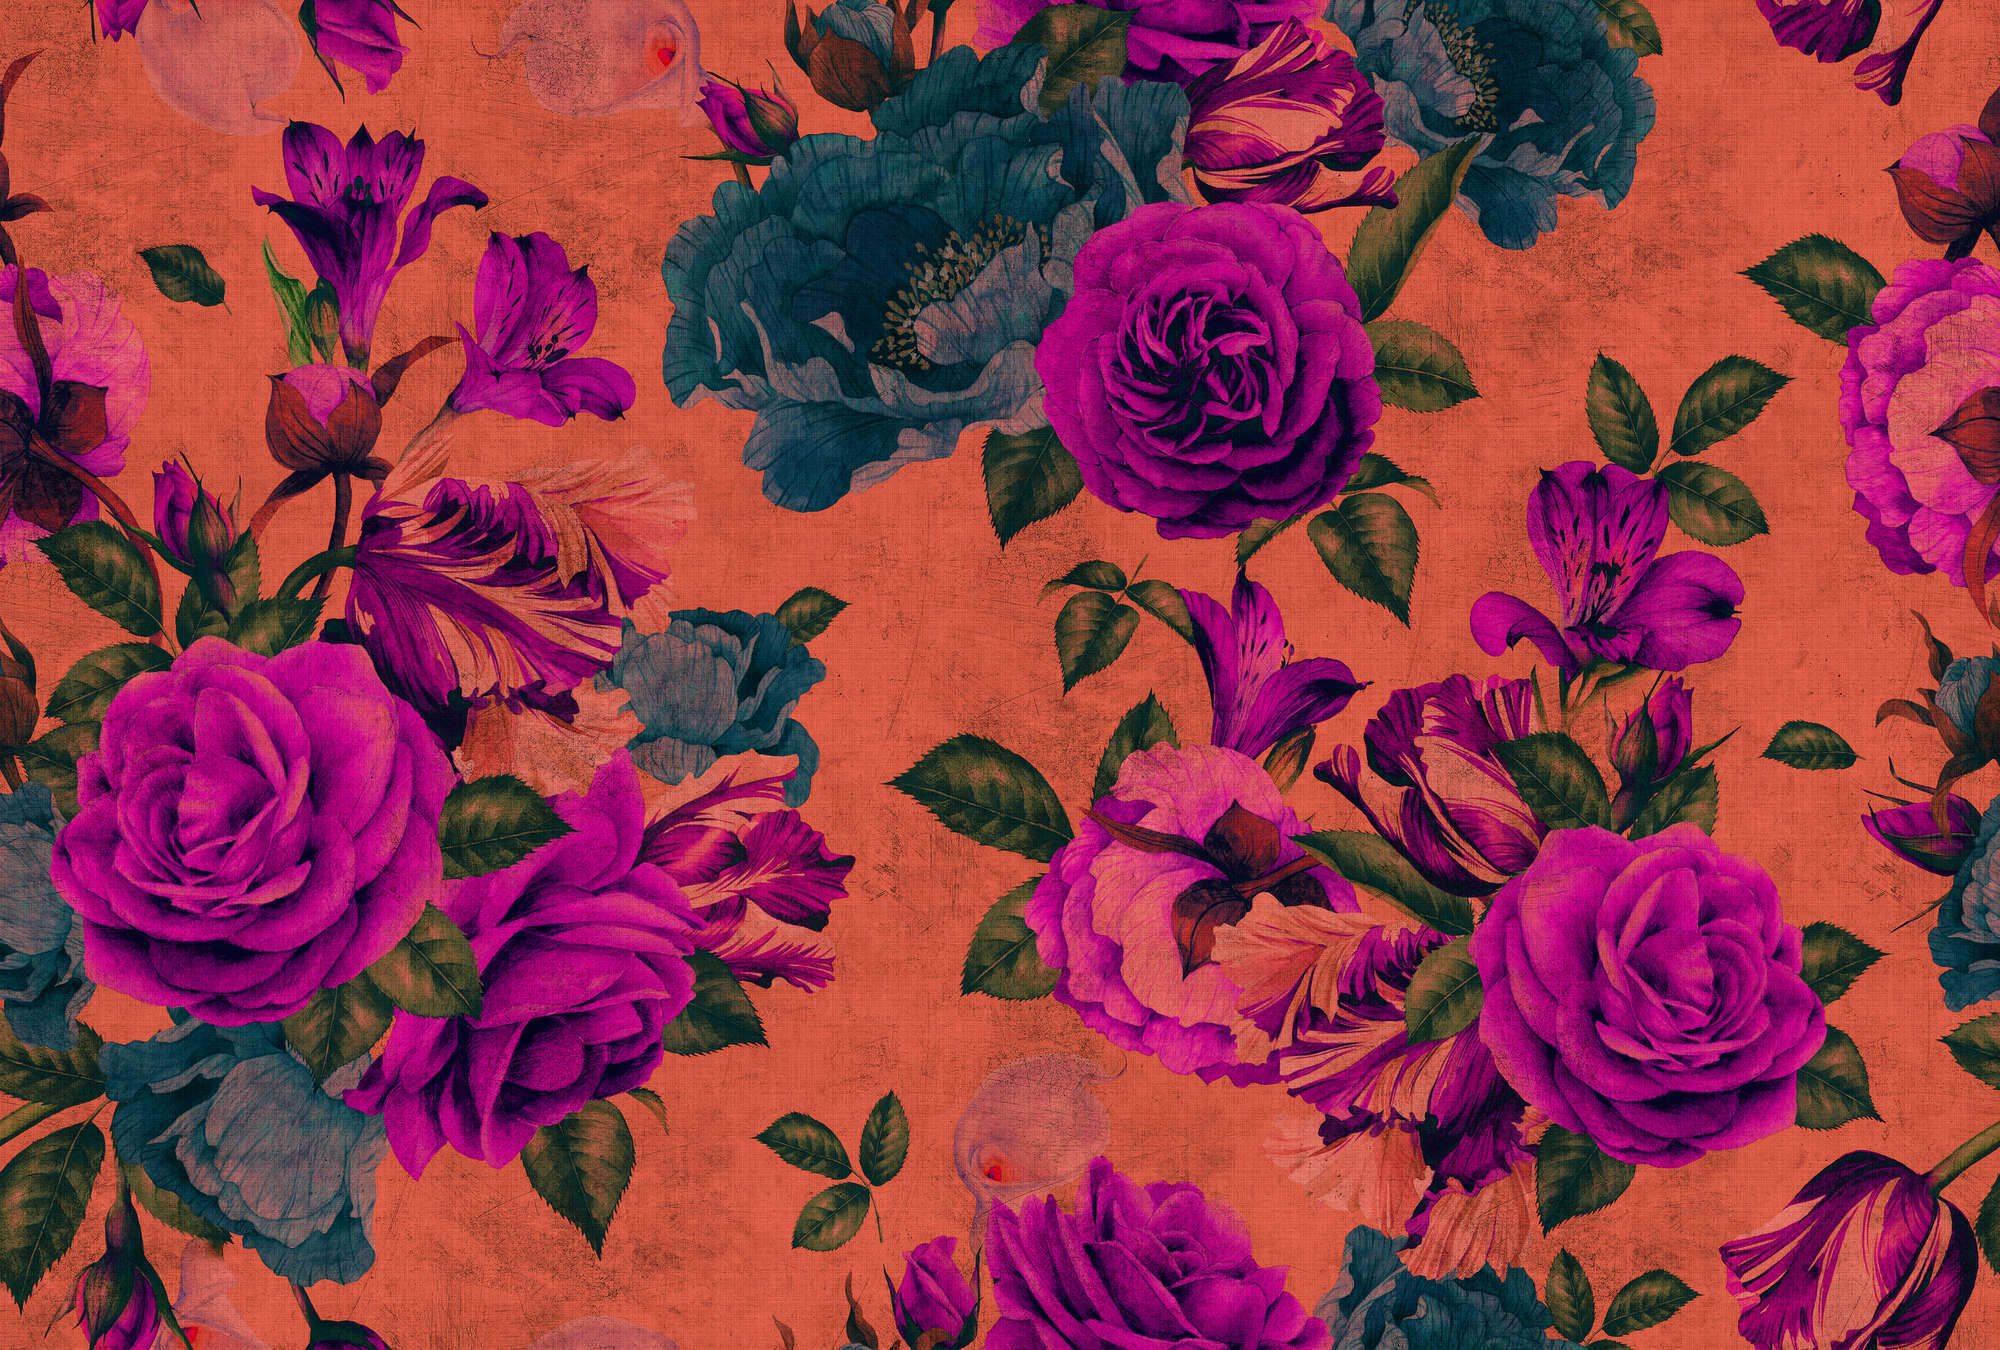             Spanish rose 2 - papel pintado de pétalos de rosa, estructura natural con colores vivos - Naranja, Violeta | Vellón liso mate
        